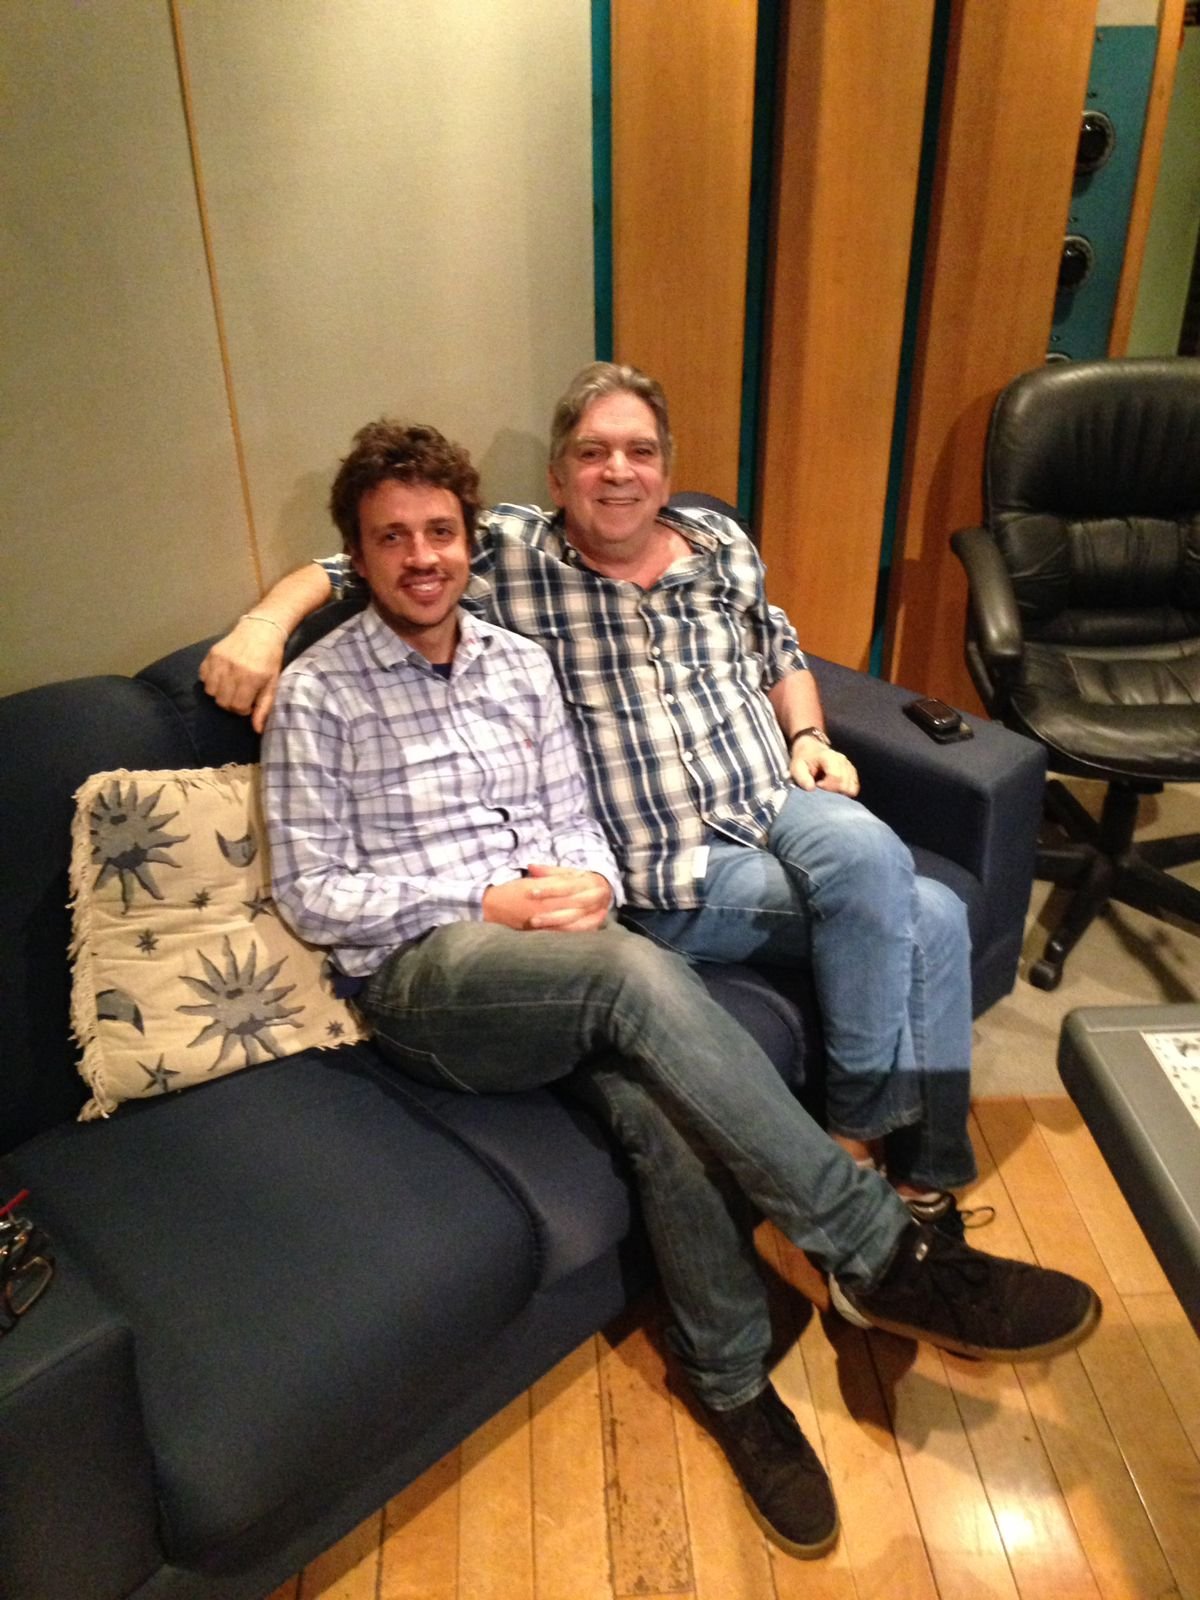 Fi Bueno e Guto Graça Melo em momento de descontração durante as gravações de "Litoral". Foto: Fi Bueno/ Acervo pessoal